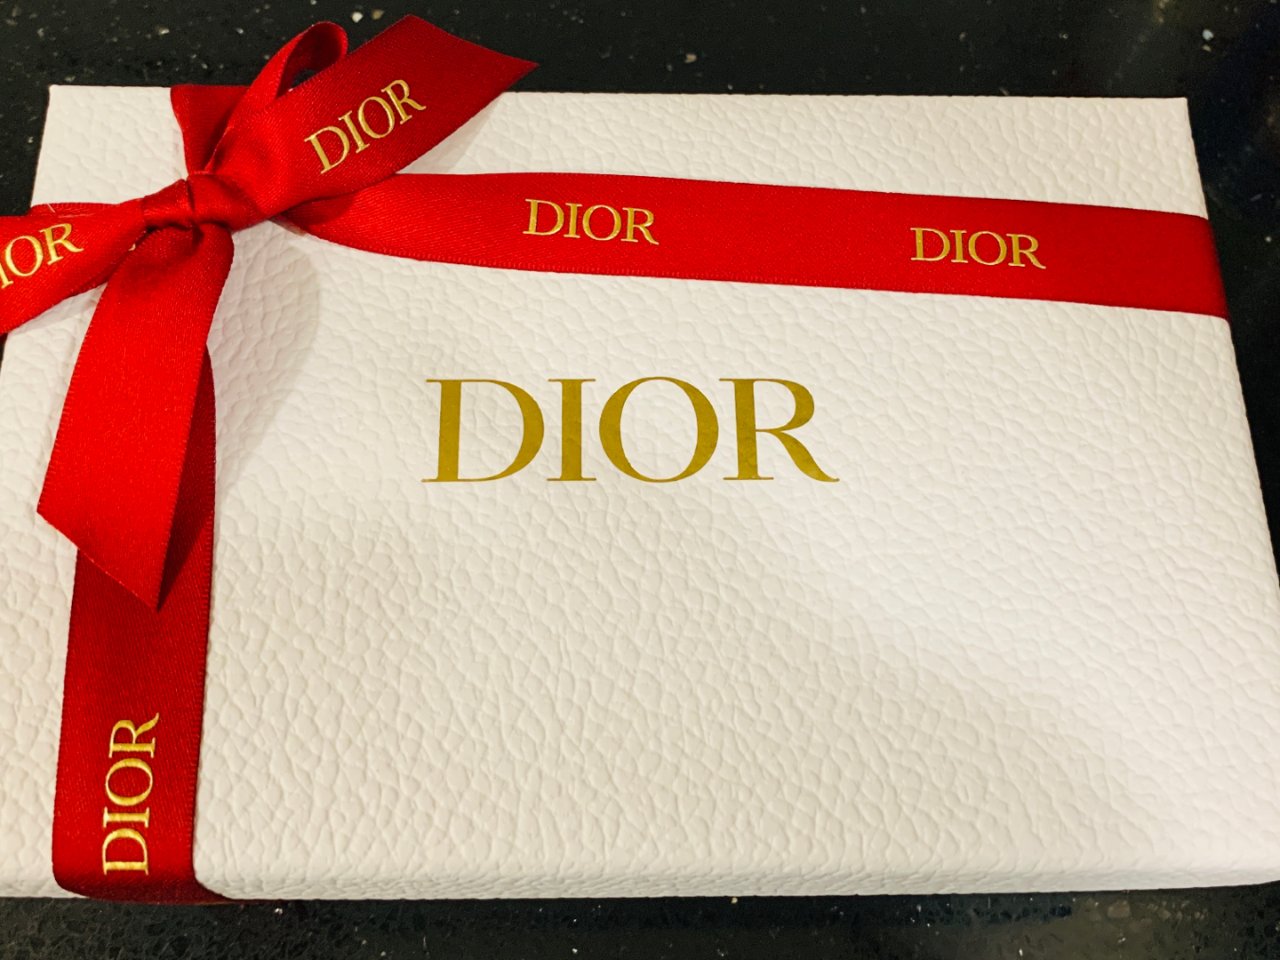 🎉 9 Dior 新年禮盒🎁...